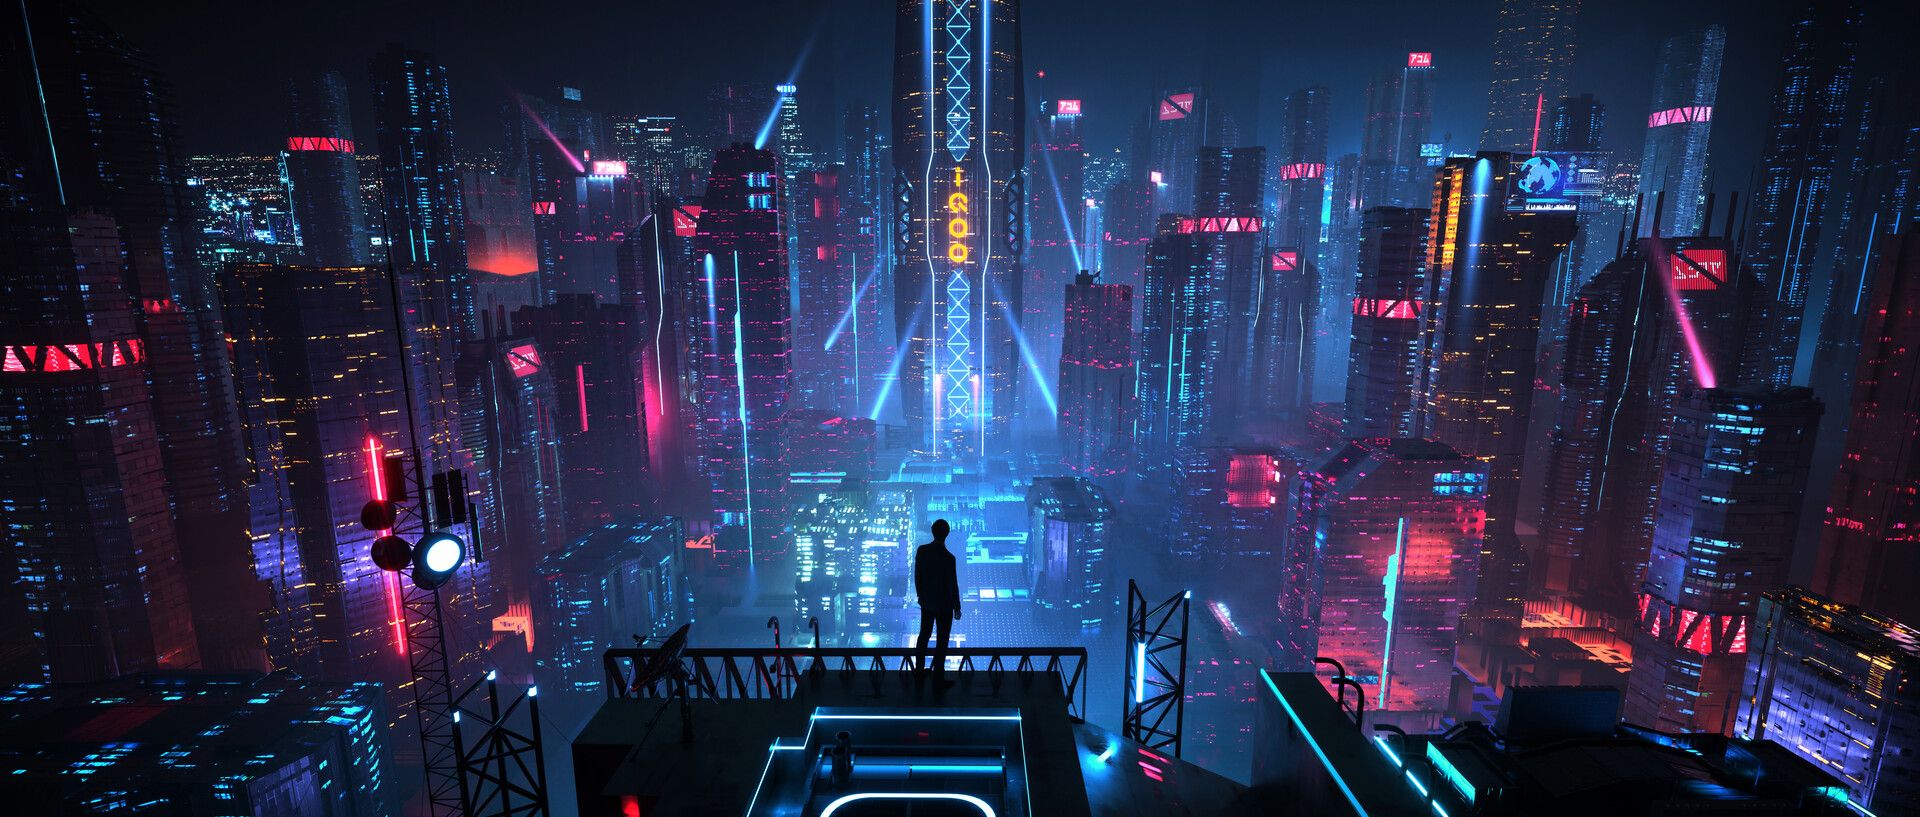 Thưởng thức tuyệt đẹp desktop wallpapers Cyberpunk City và đưa bạn vào những cảnh quan ảo tưởng của một tương lai đầy những hình ảnh sci-fi đầy mê hoặc. Hãy sẵn sàng để bị cuốn hút bởi những bức hình này, với độ phân giải cao và đầy màu sắc.